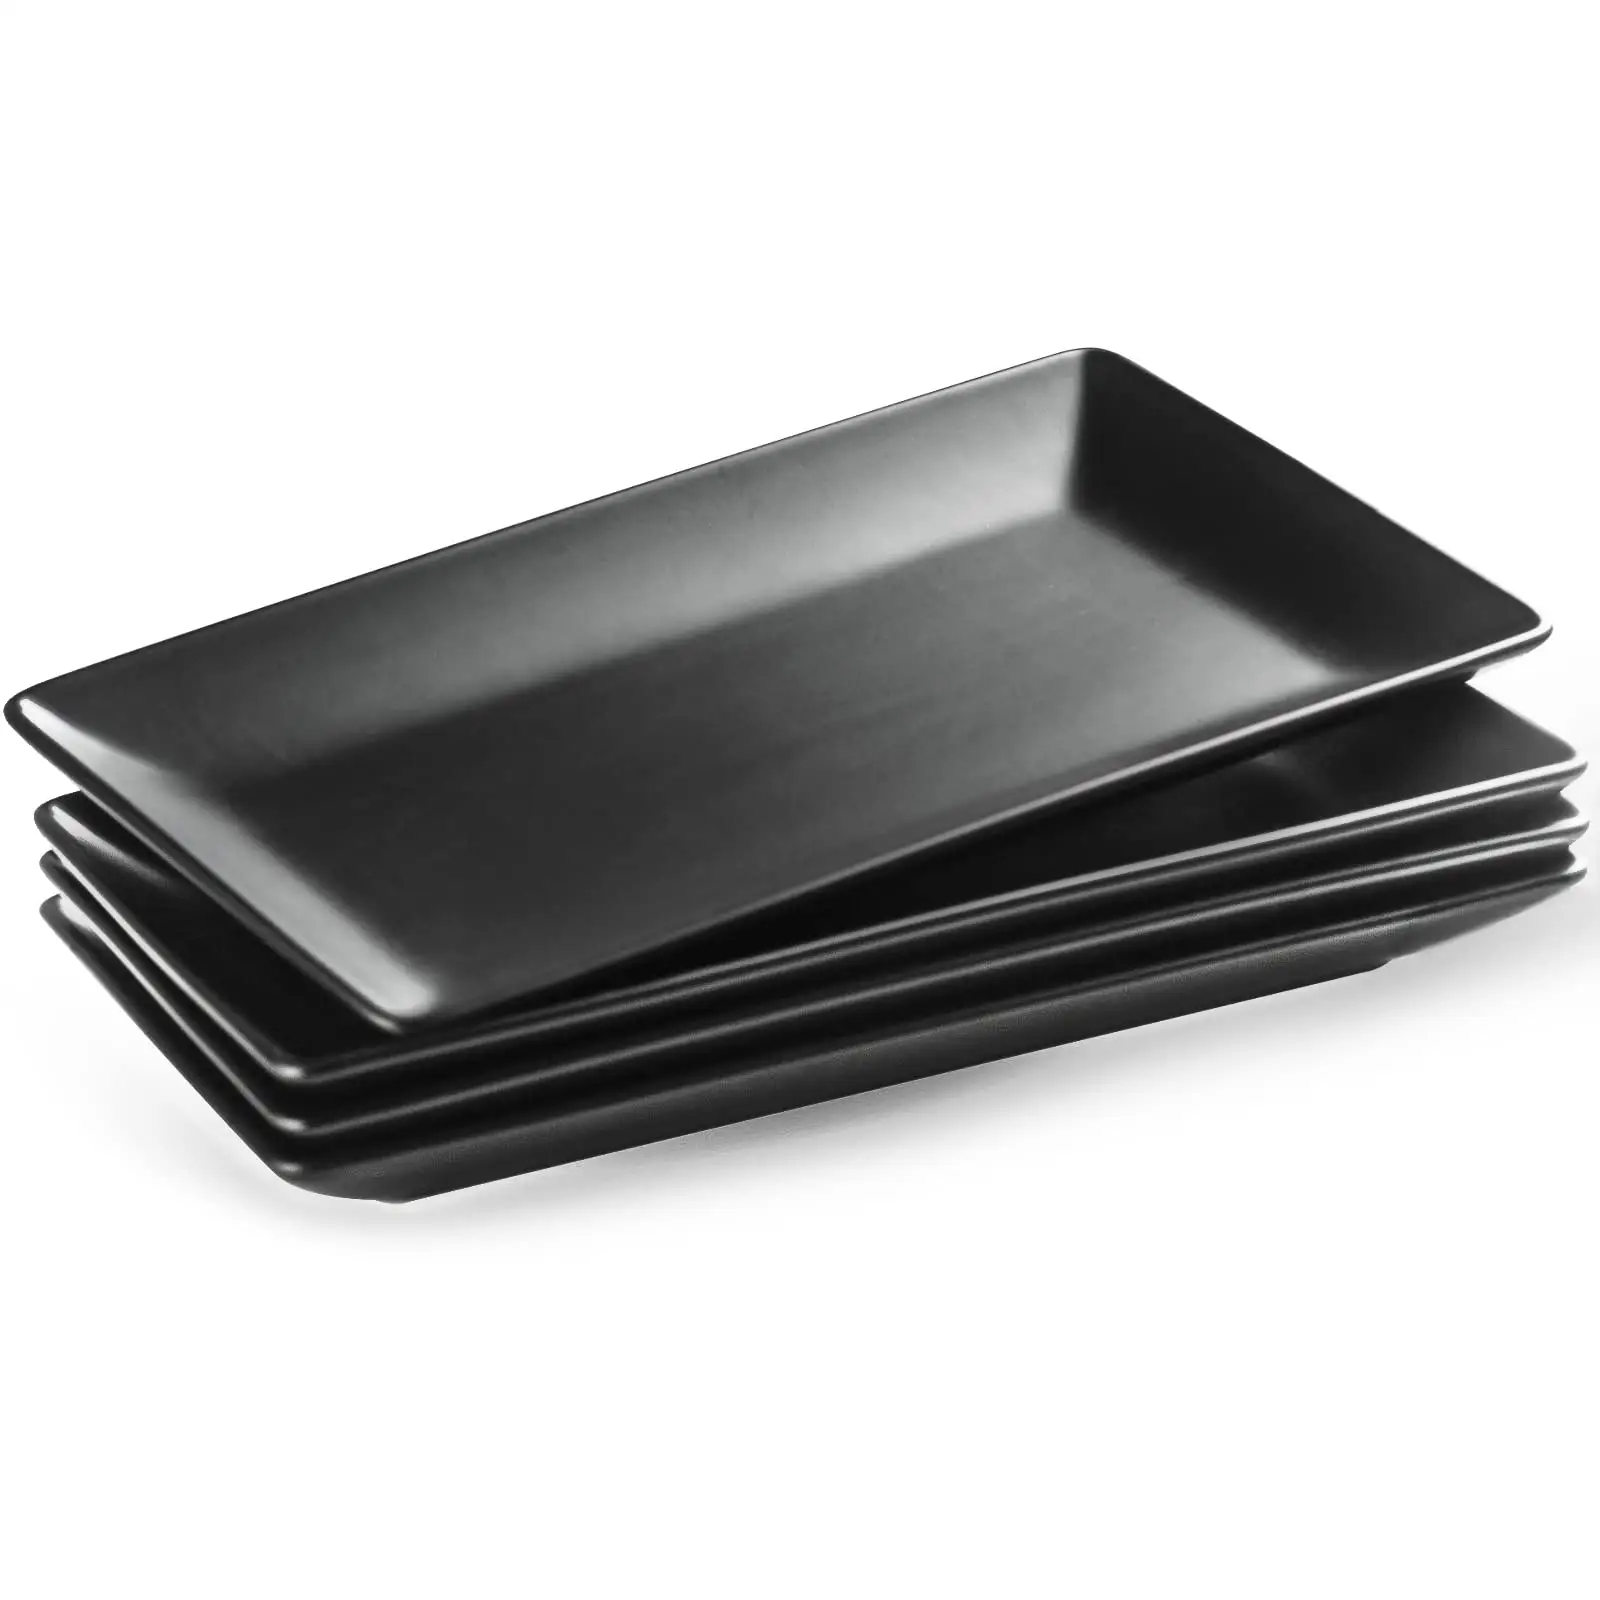 Custom Color 9.84 Inch Melamine Serving Platters Rectangular Trays White Serving Platters Melamine Plate Set